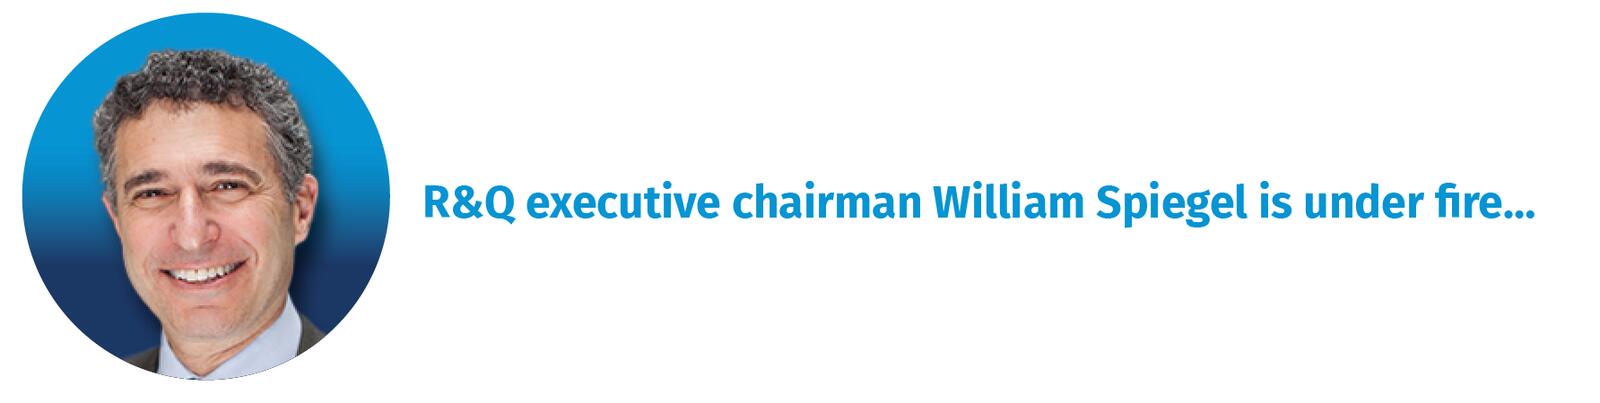 R&Q Executive Chairman William Spiegel is under fire